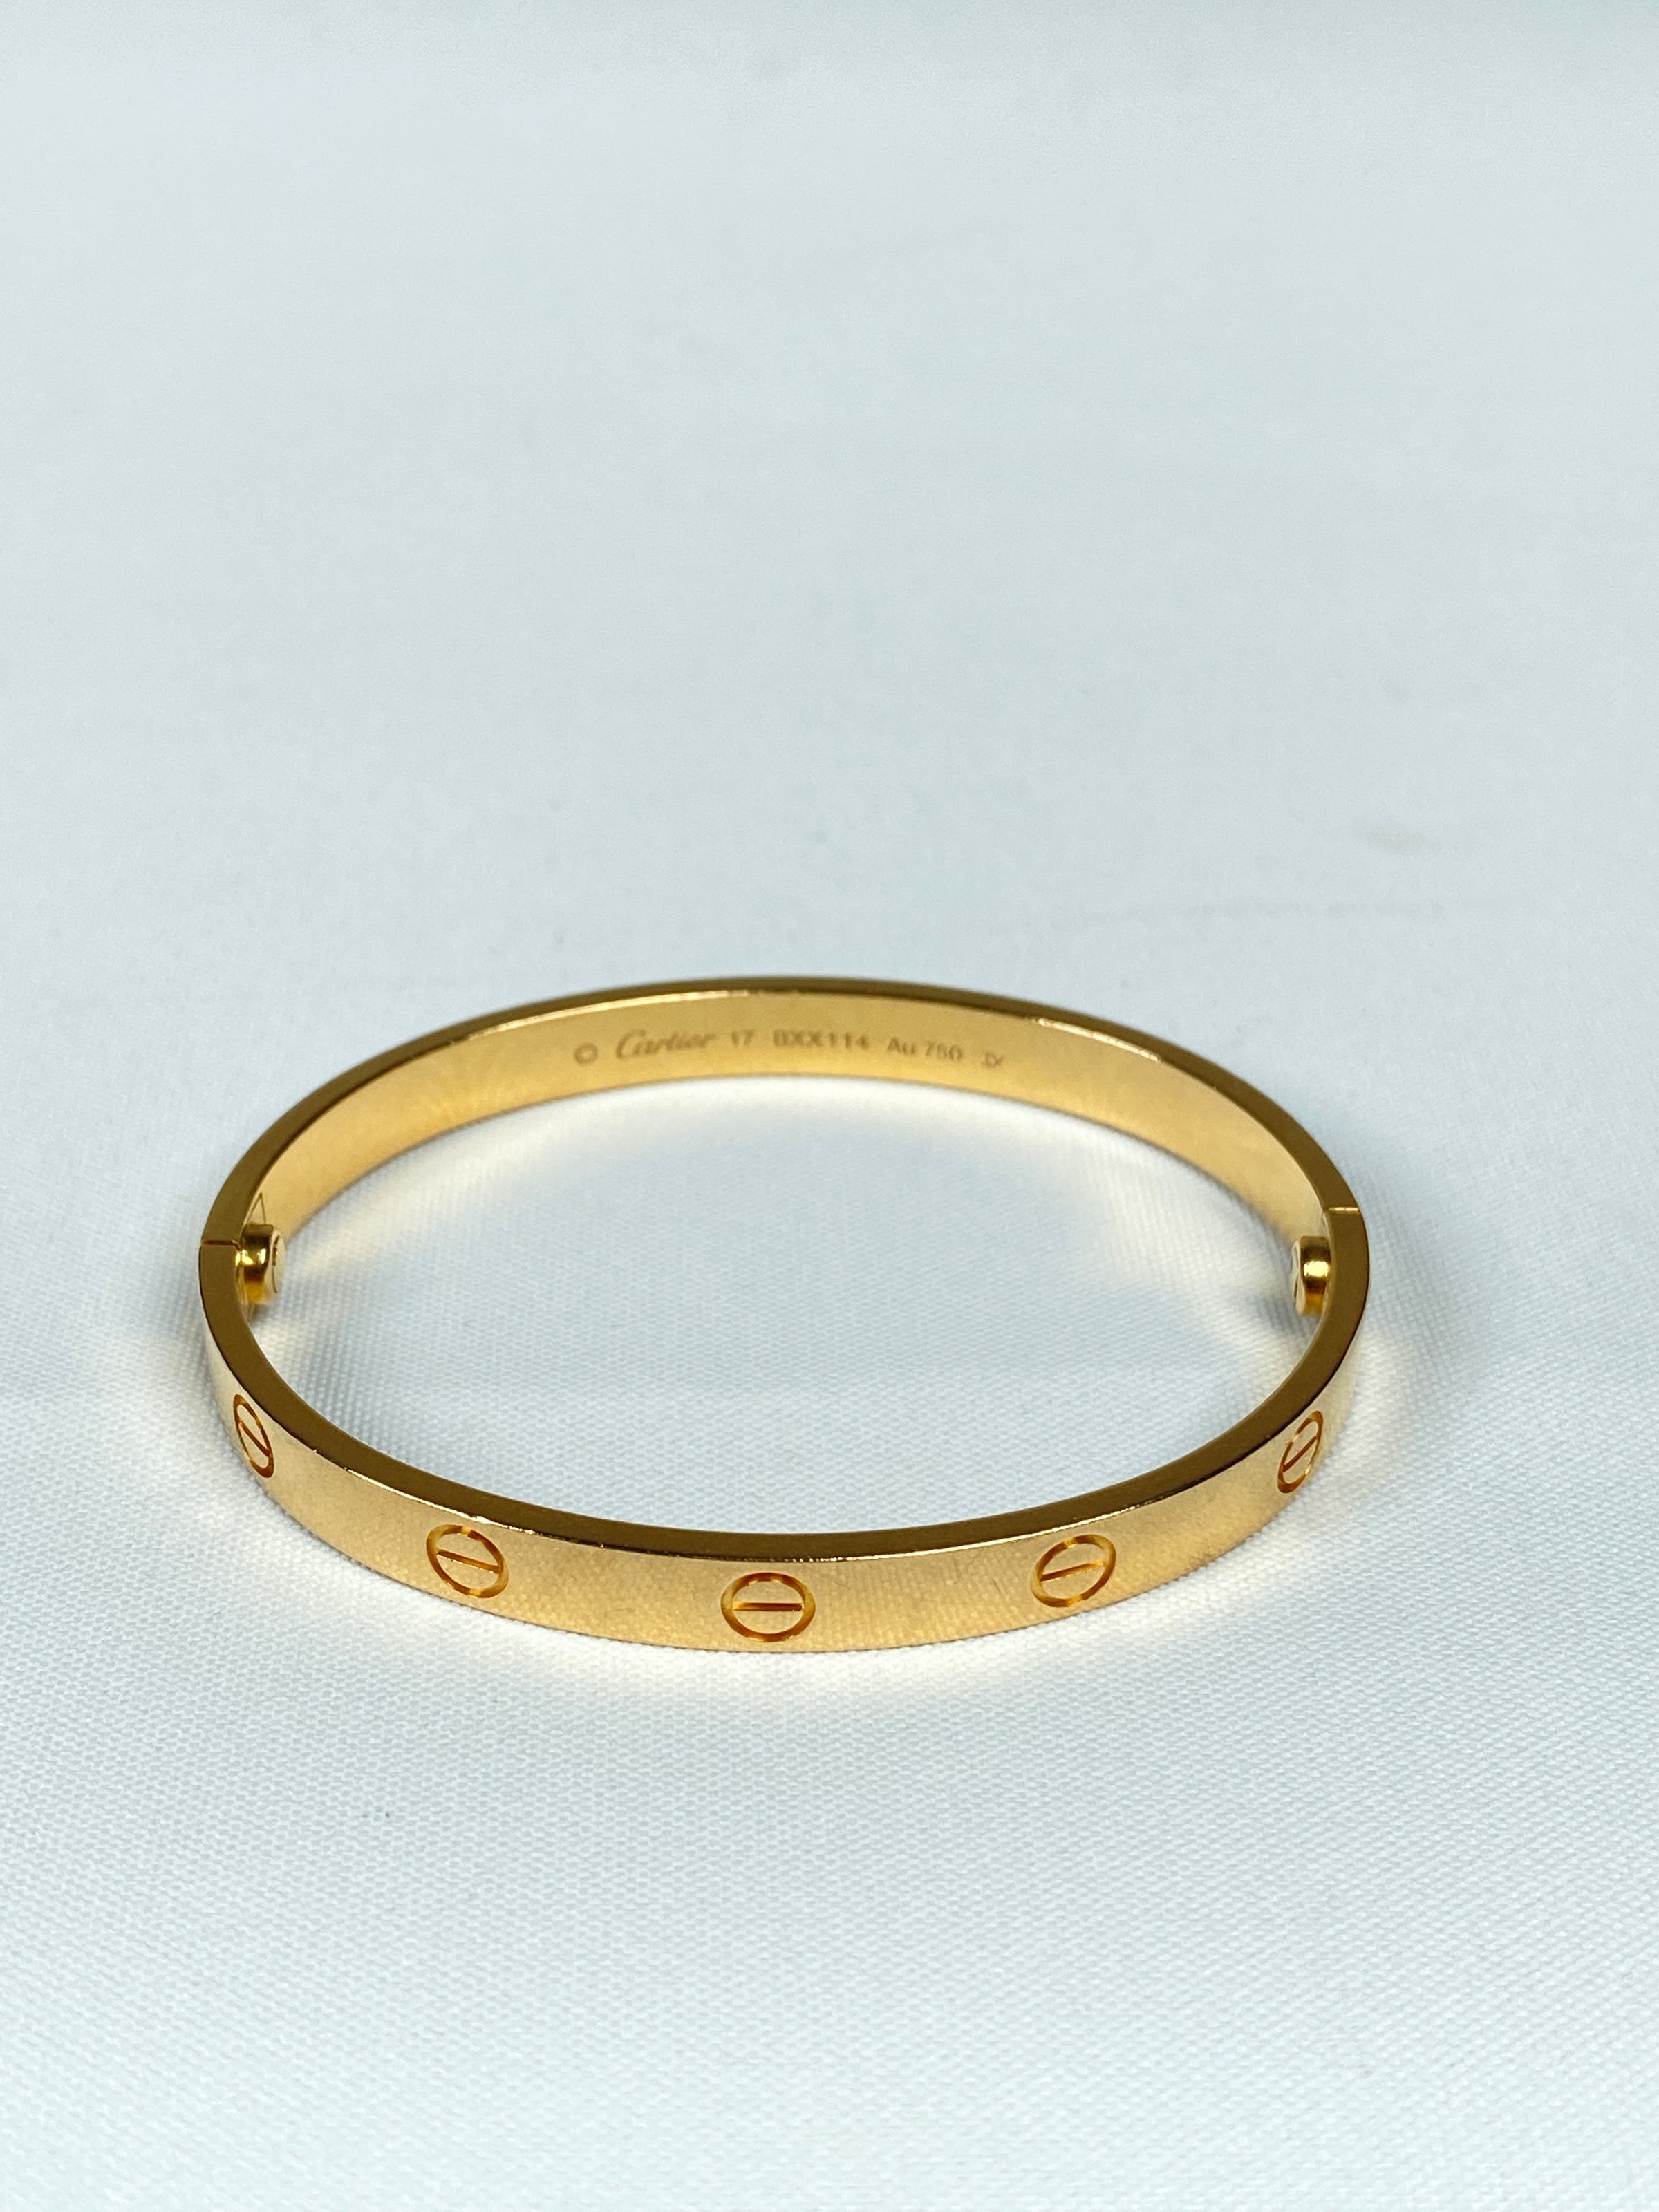 Pin by jaya on kada | Cartier love bracelet, Mens bracelet, Gold bangles